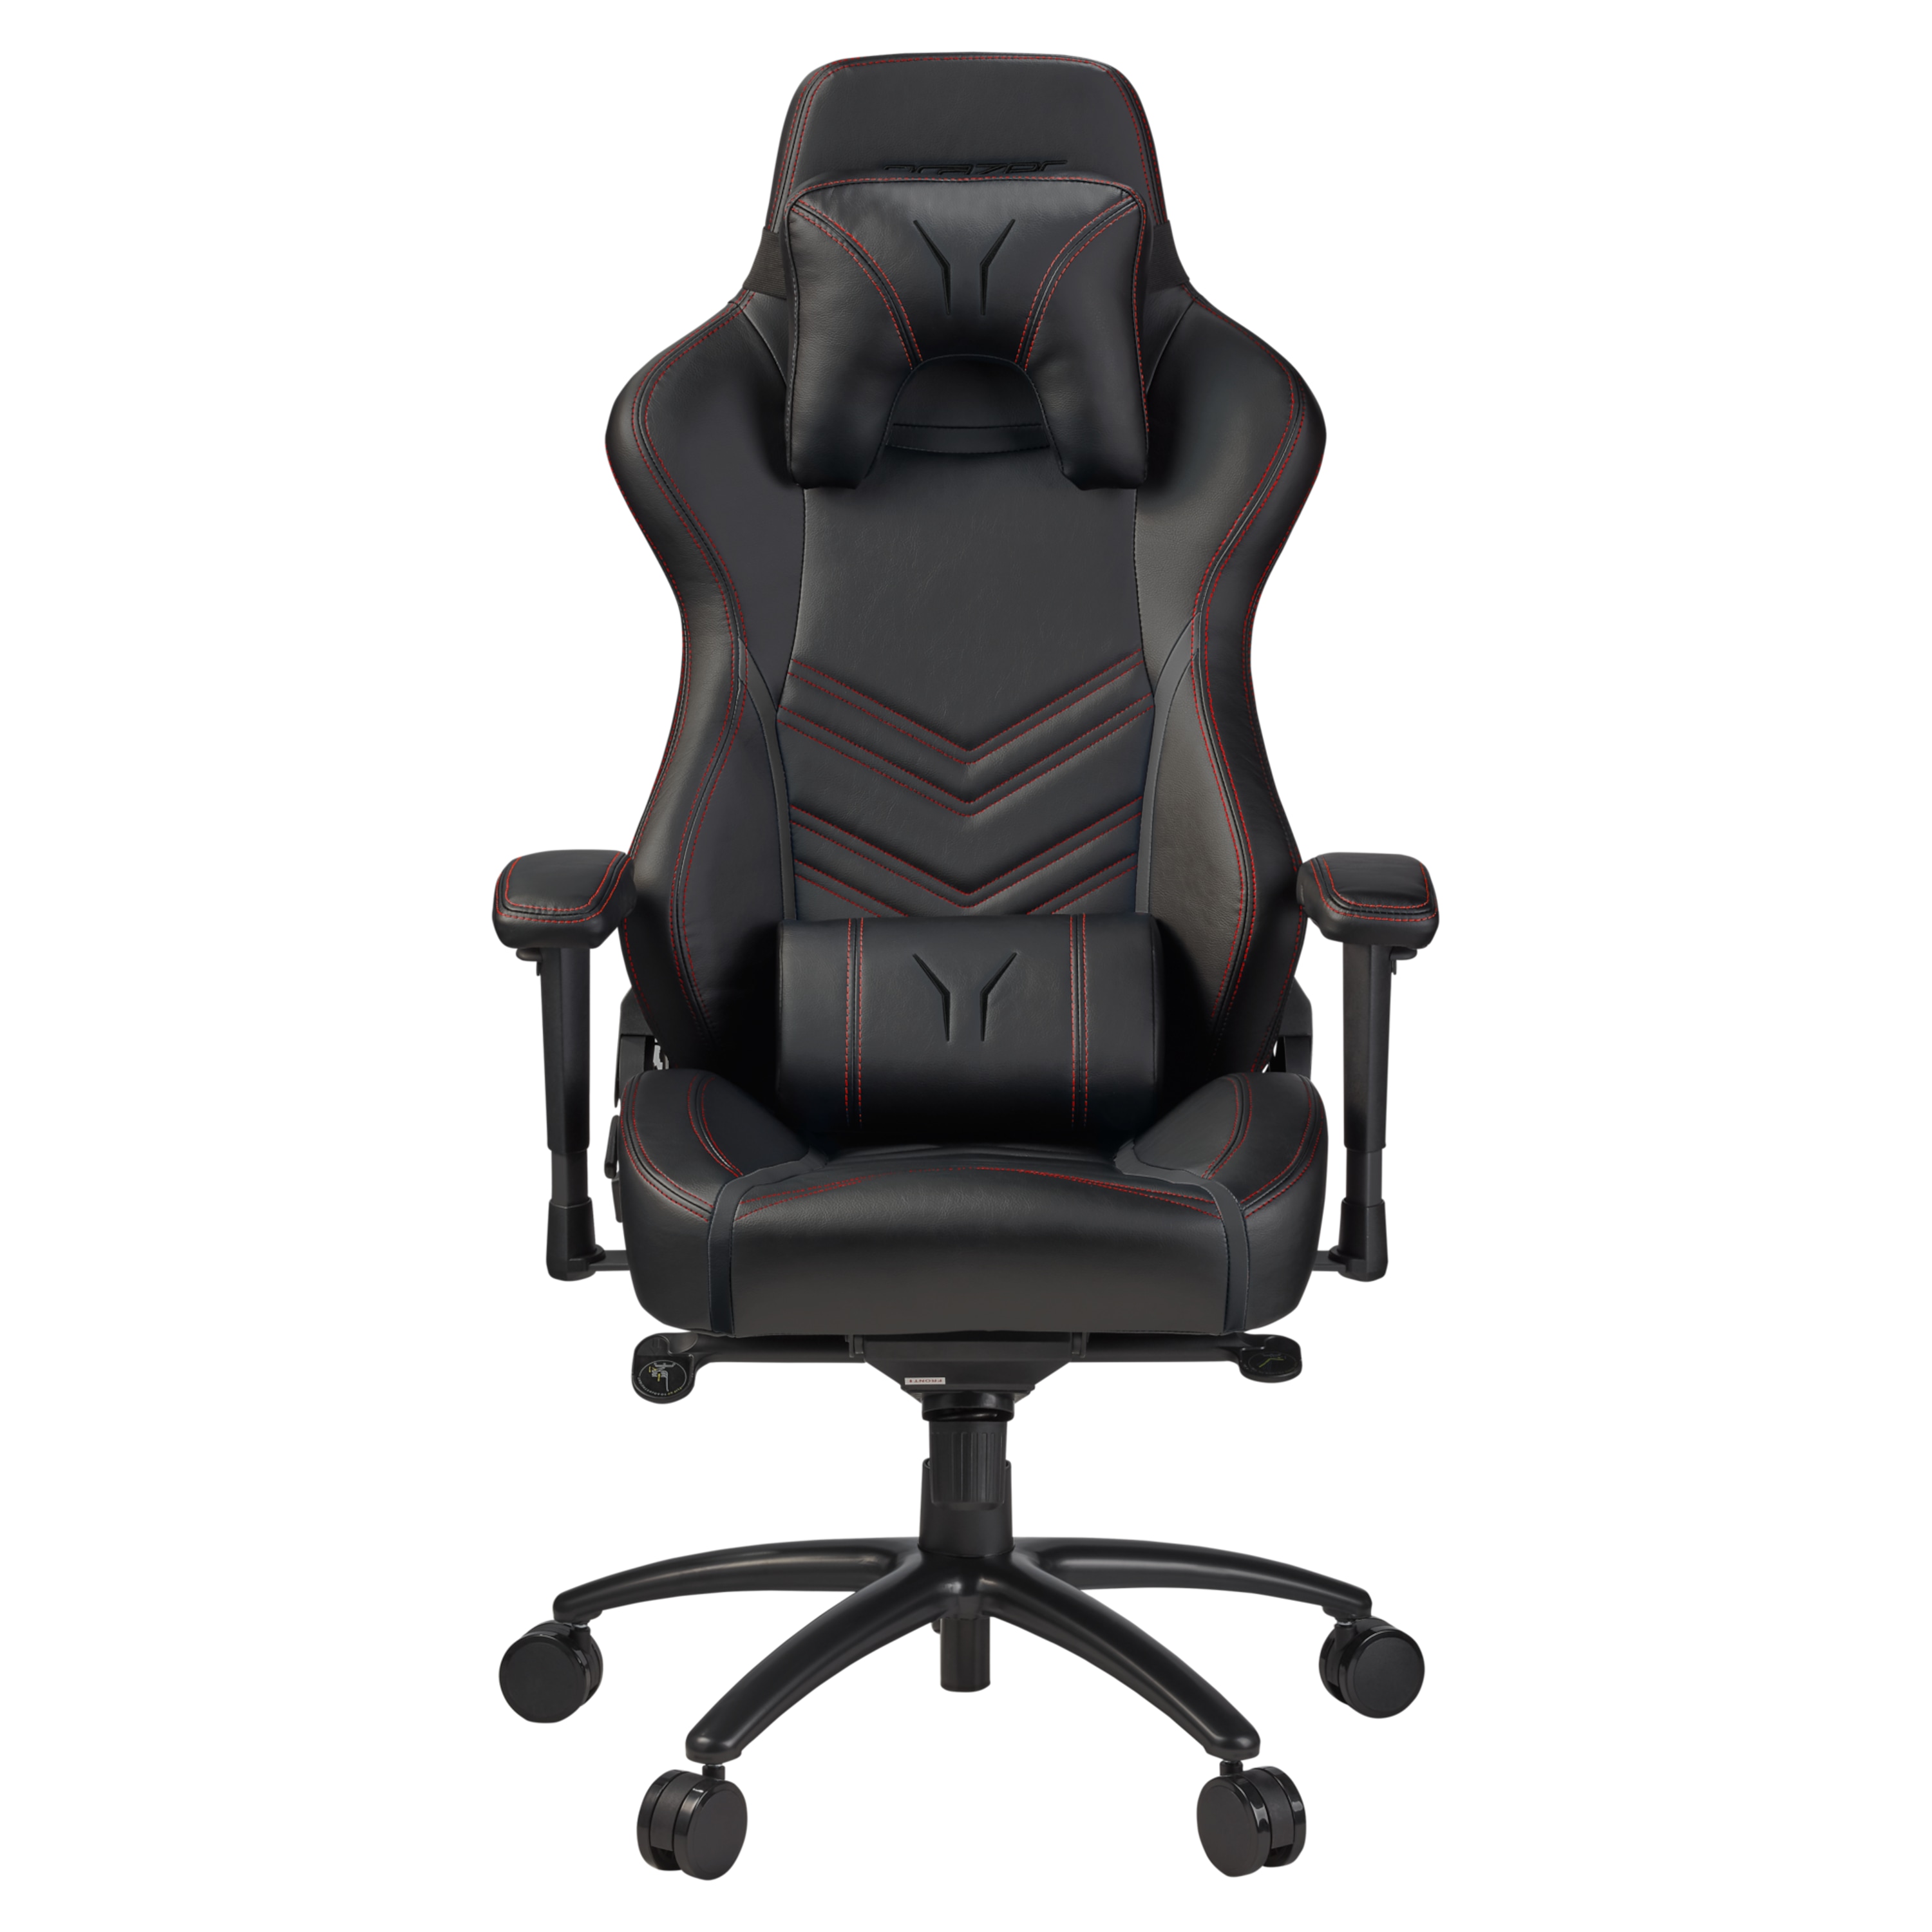 Kissen günstig Kaufen-MEDION ERAZER® X89410 Gaming Stuhl, stilvoll und komfortabel, sportliche Optik und hochwertige Materialien, mit 2 Kissen für den Rücken- und Kopfbereich. MEDION ERAZER® X89410 Gaming Stuhl, stilvoll und komfortabel, sportliche Optik un